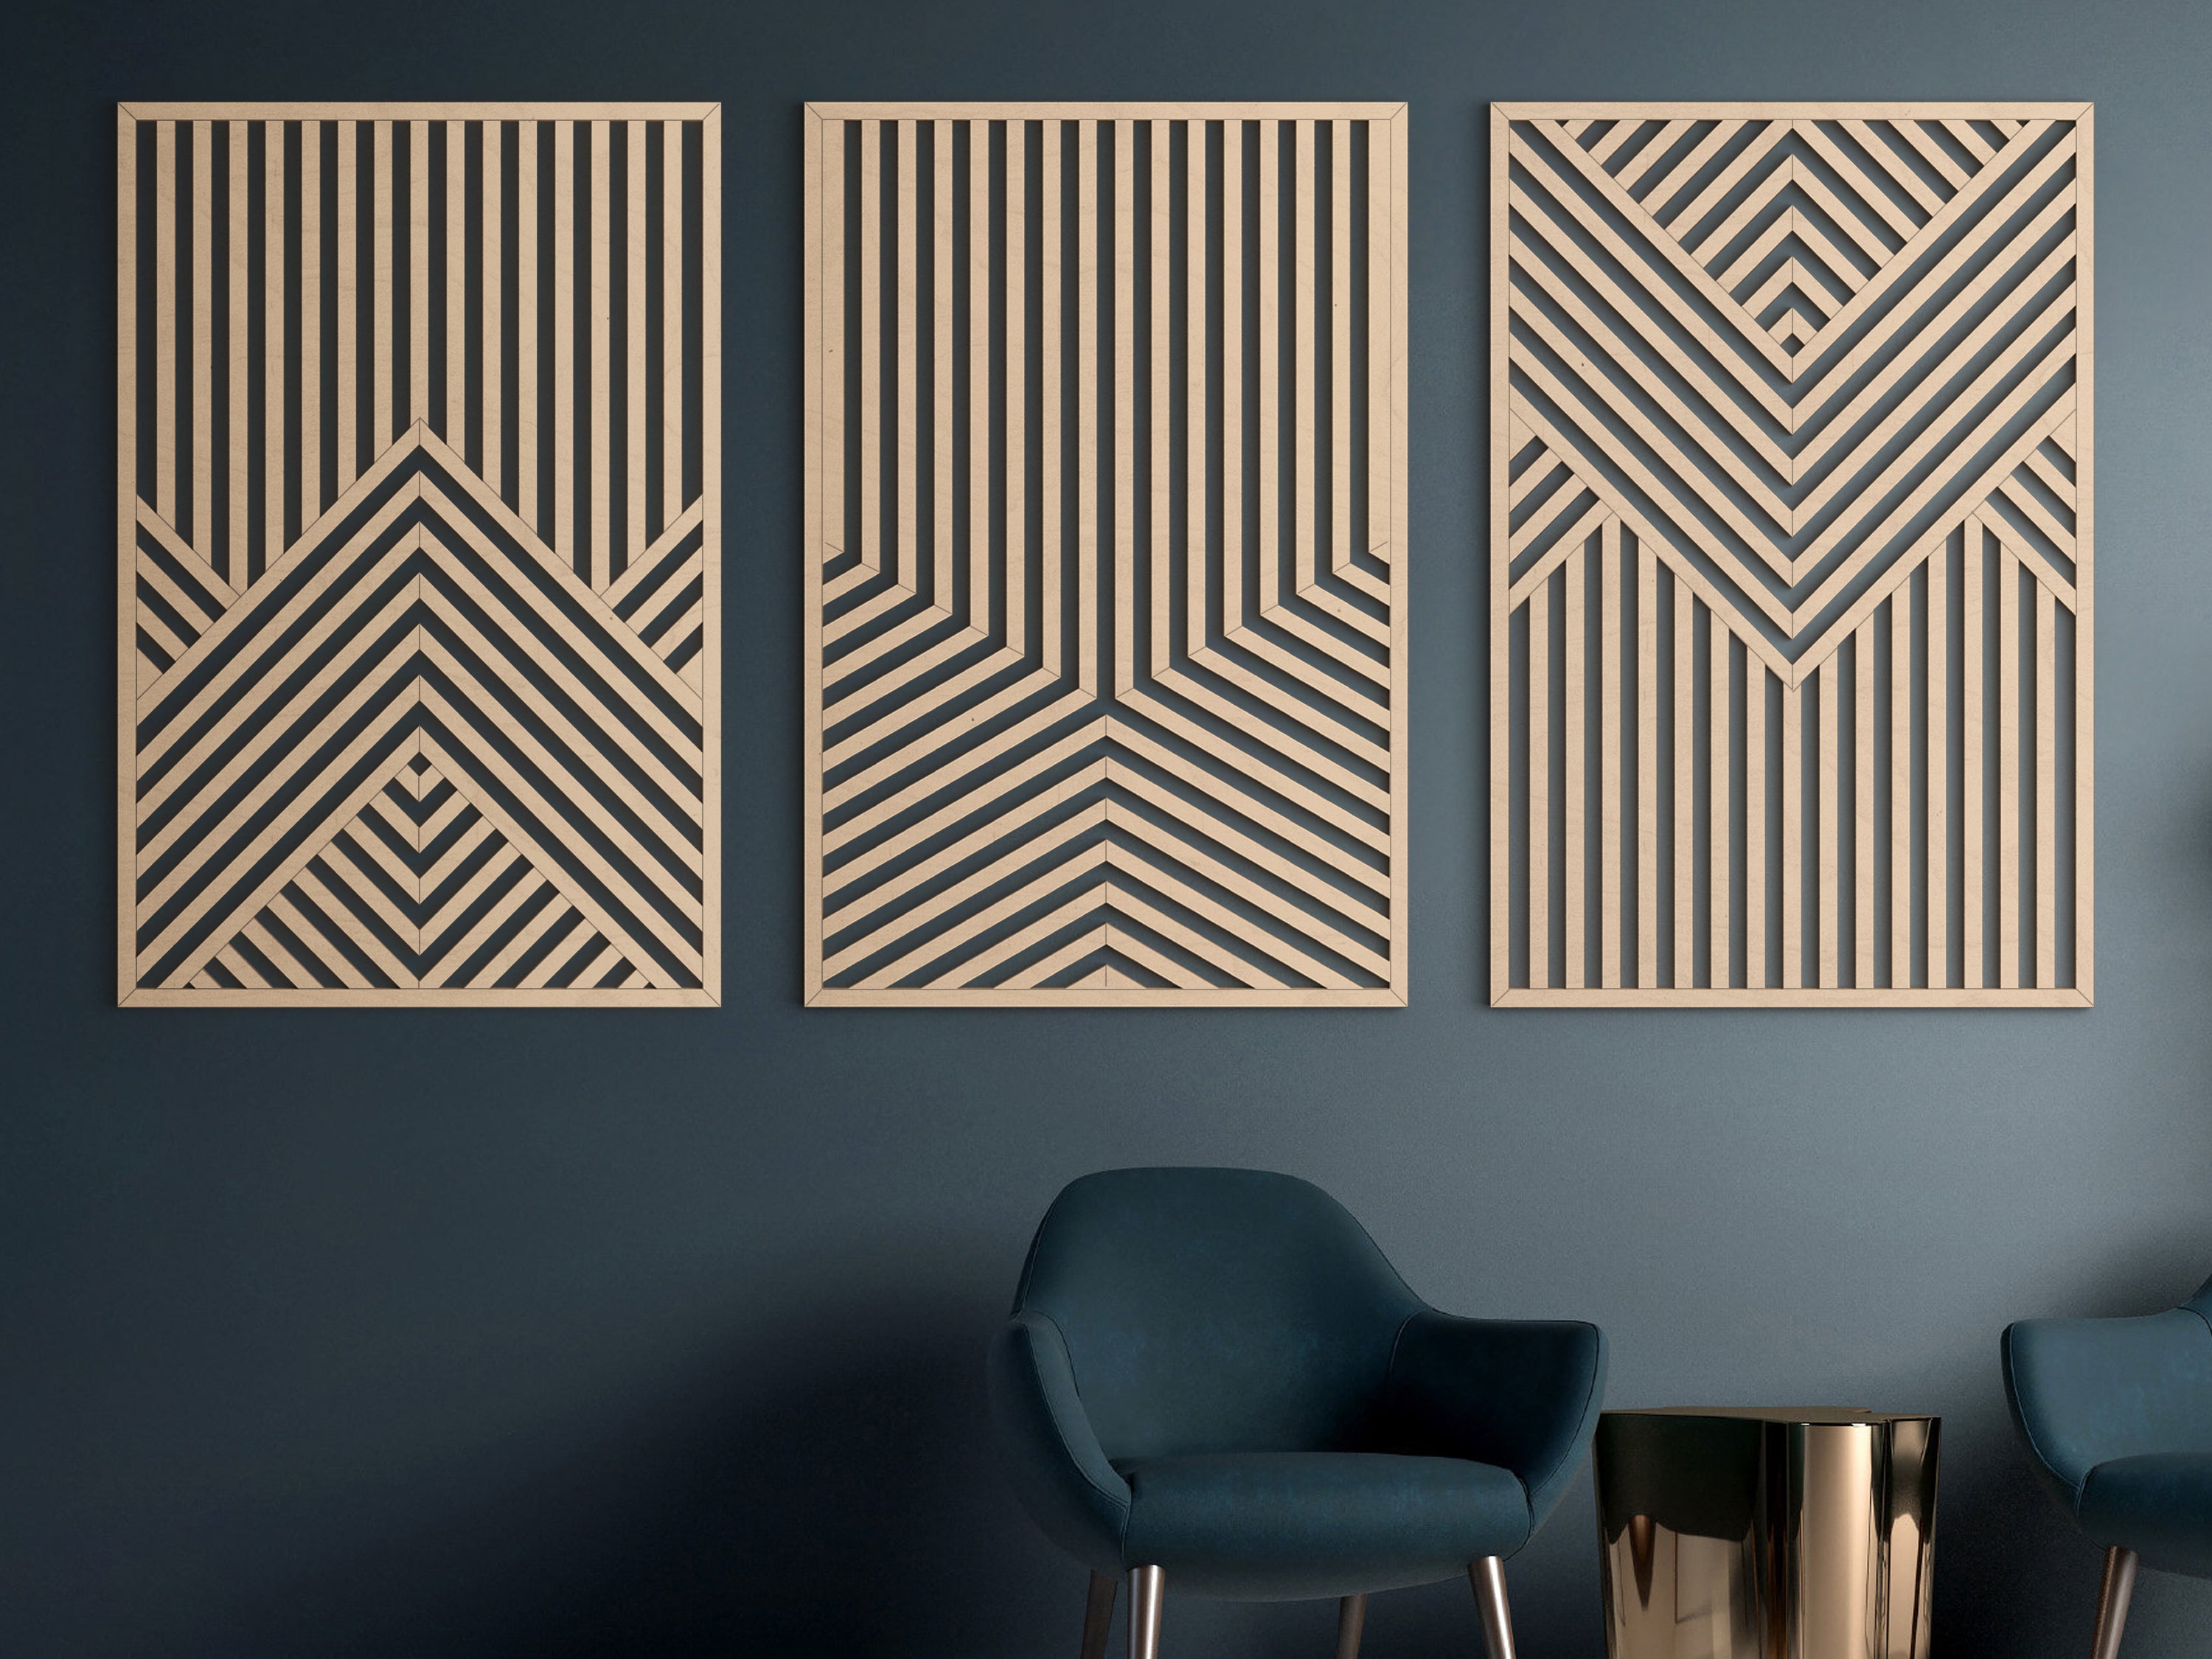 Wood wall art - Geometric wood wall decor - Minimalist wall art